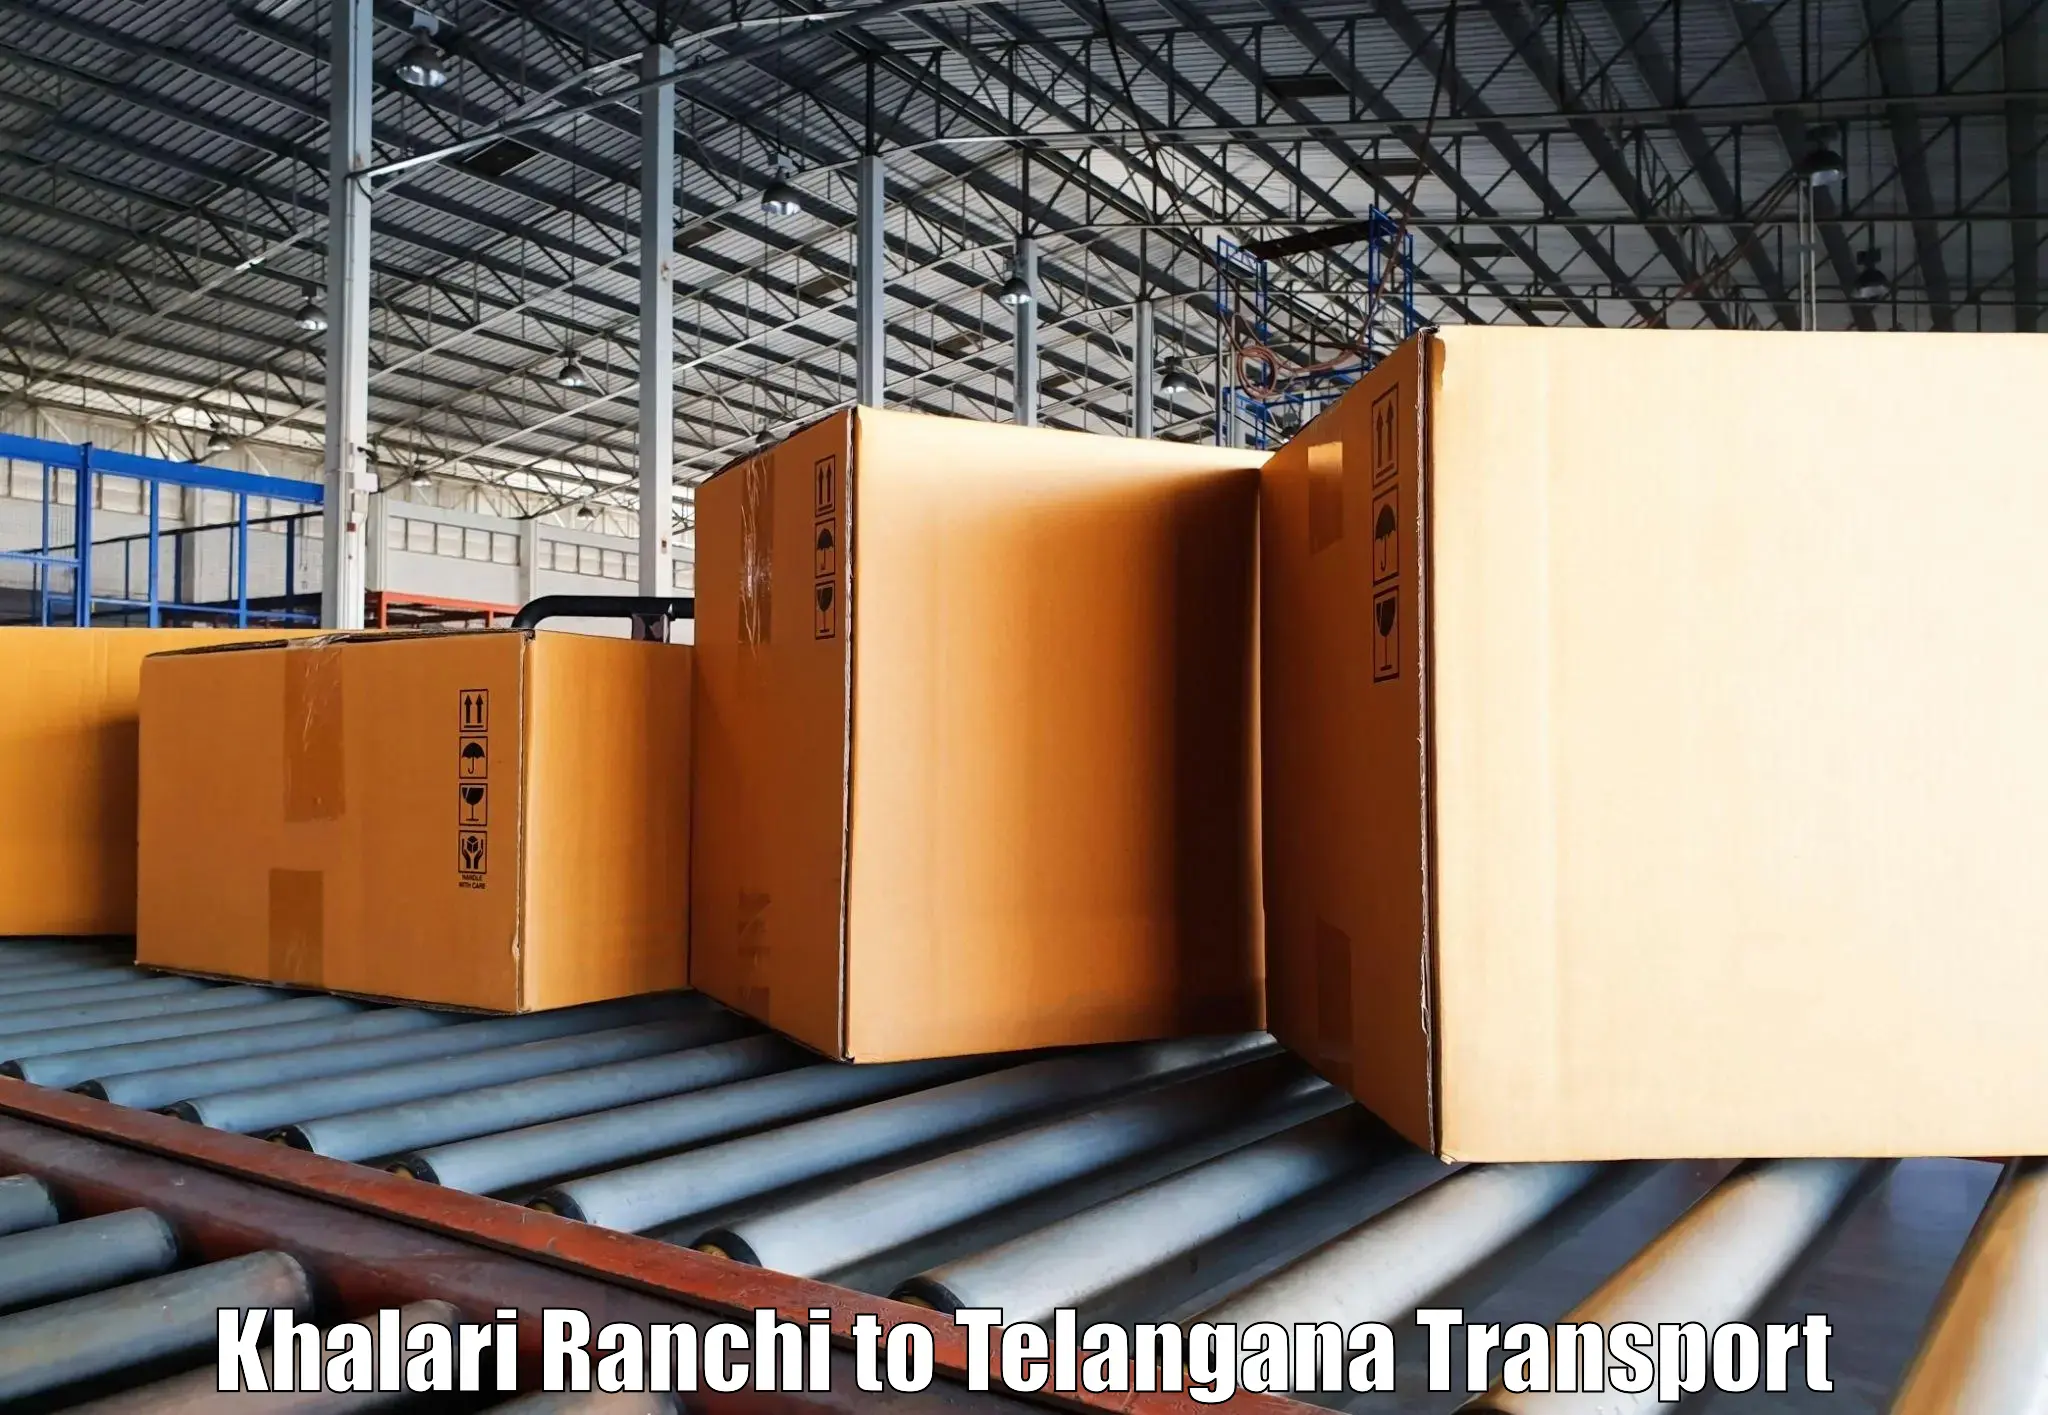 Transport in sharing Khalari Ranchi to Dahegaon